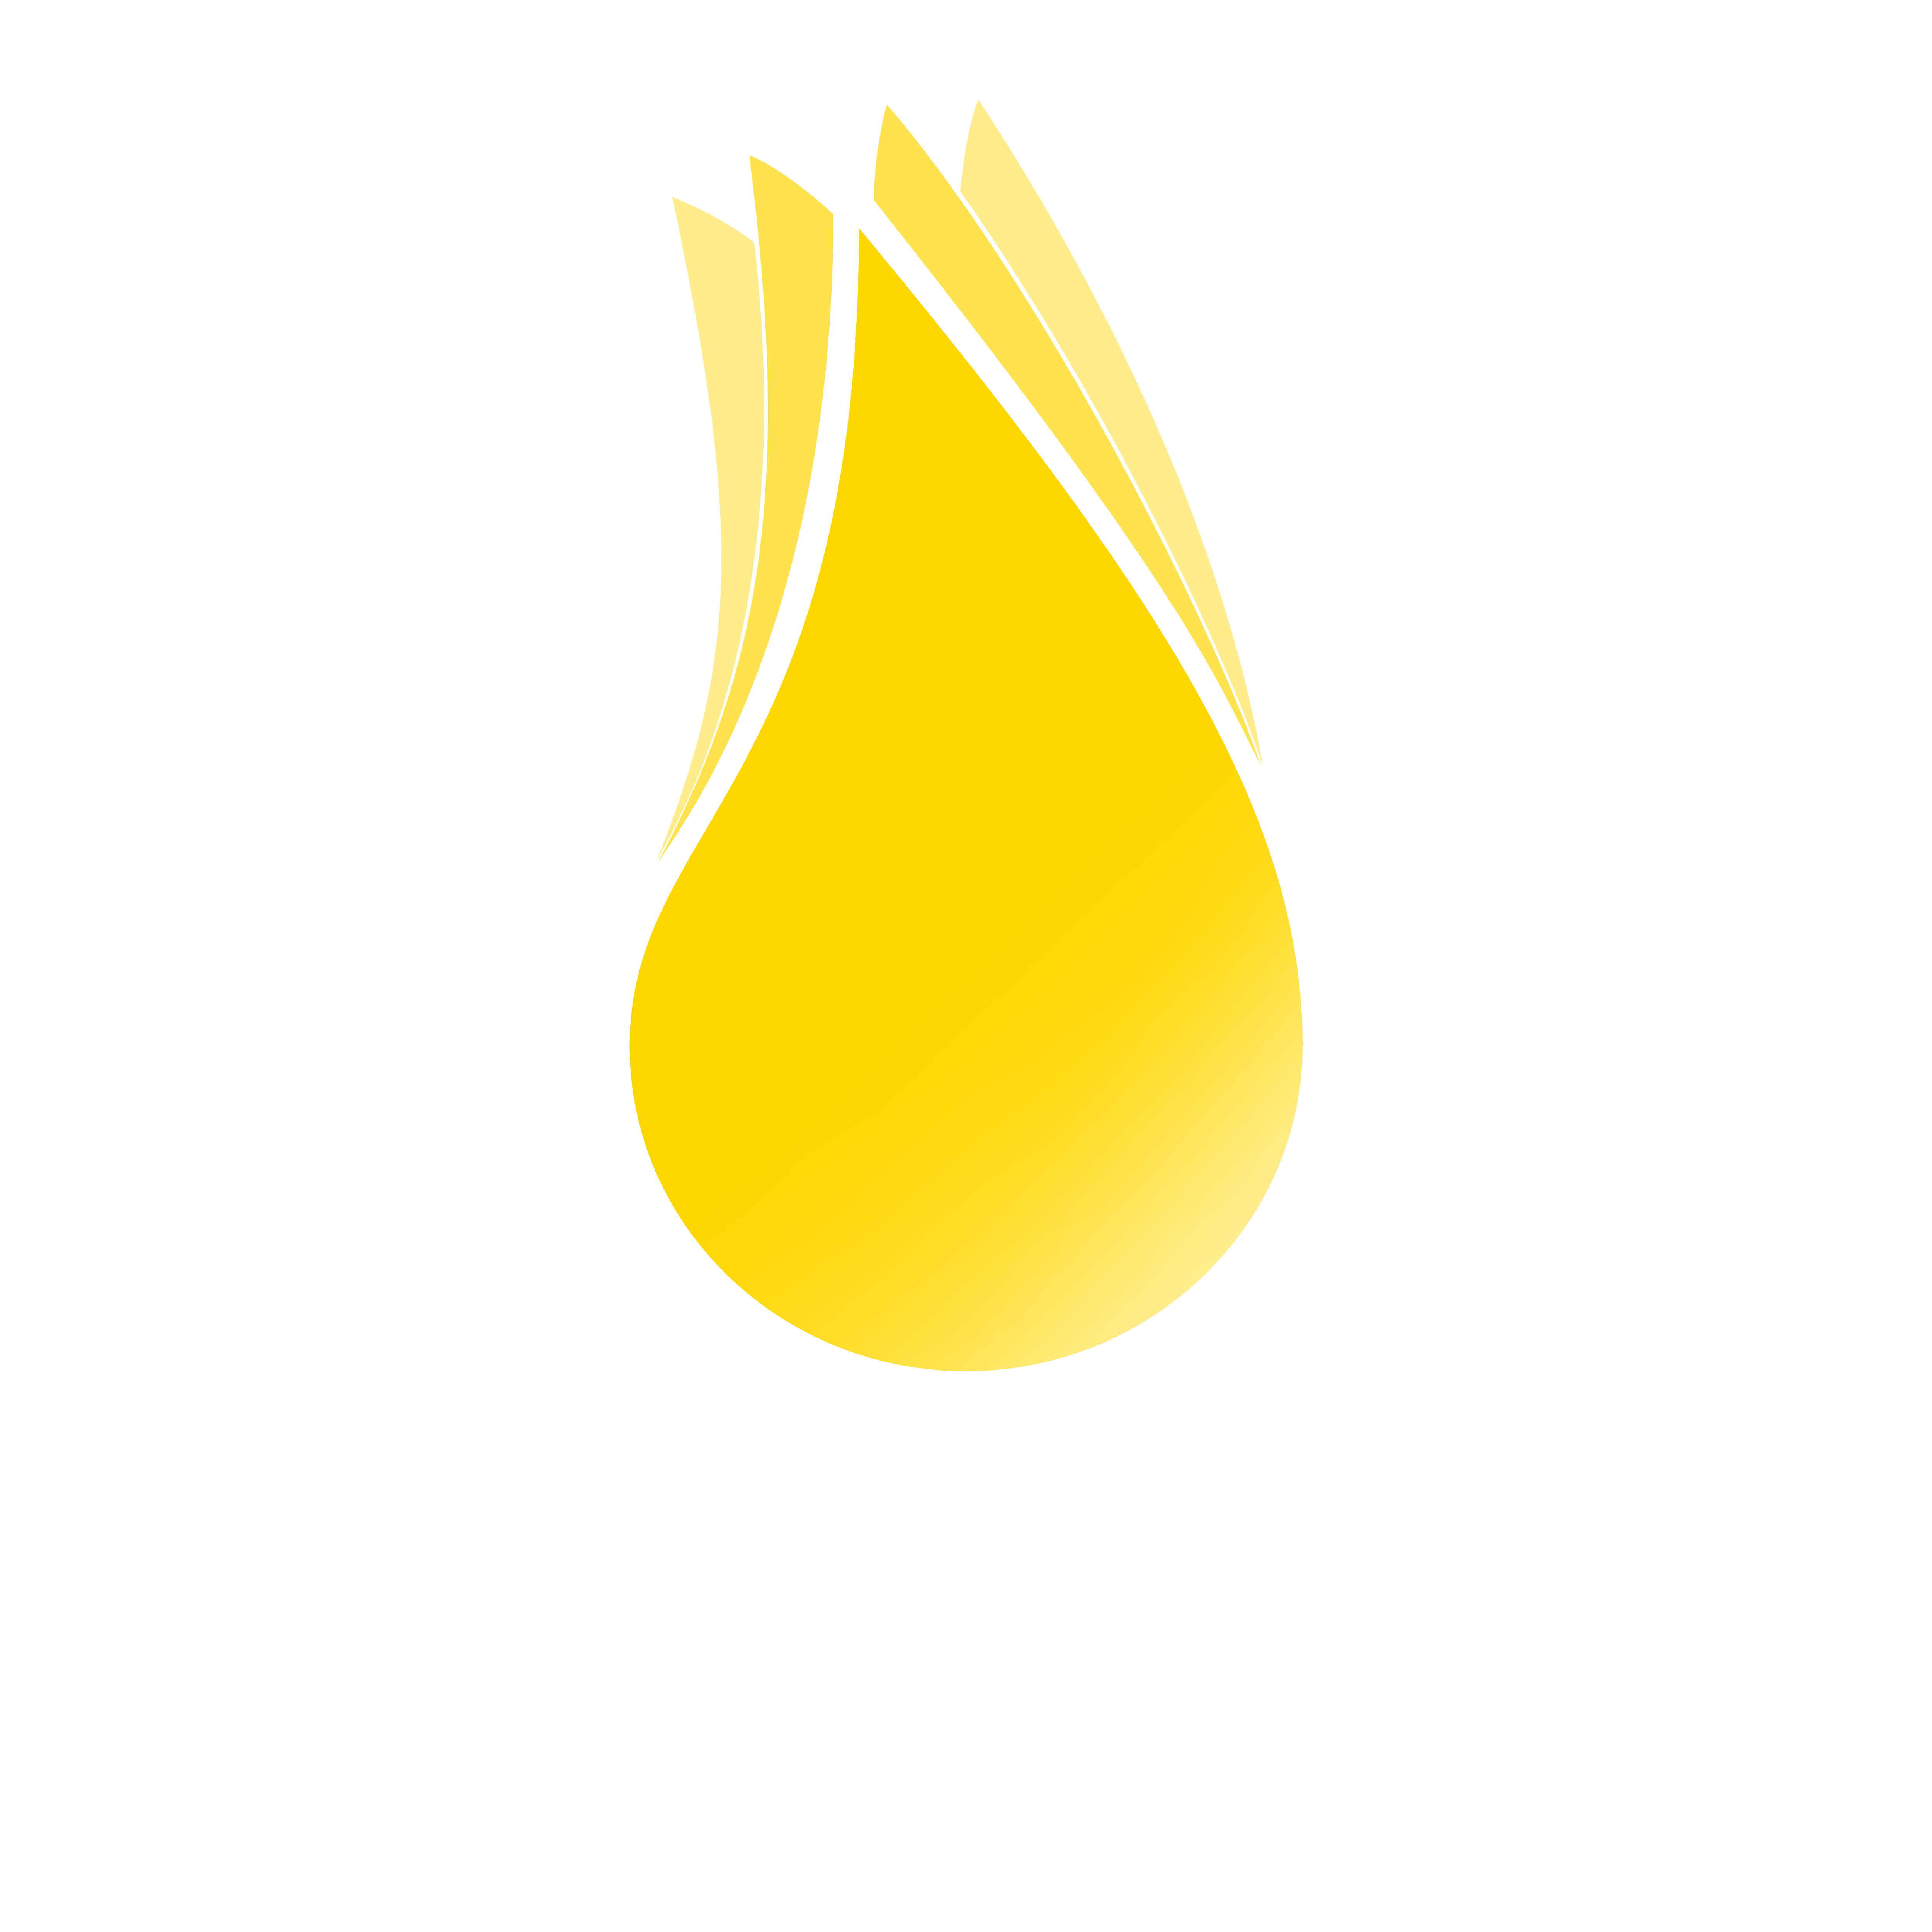 Kan Film Festivali